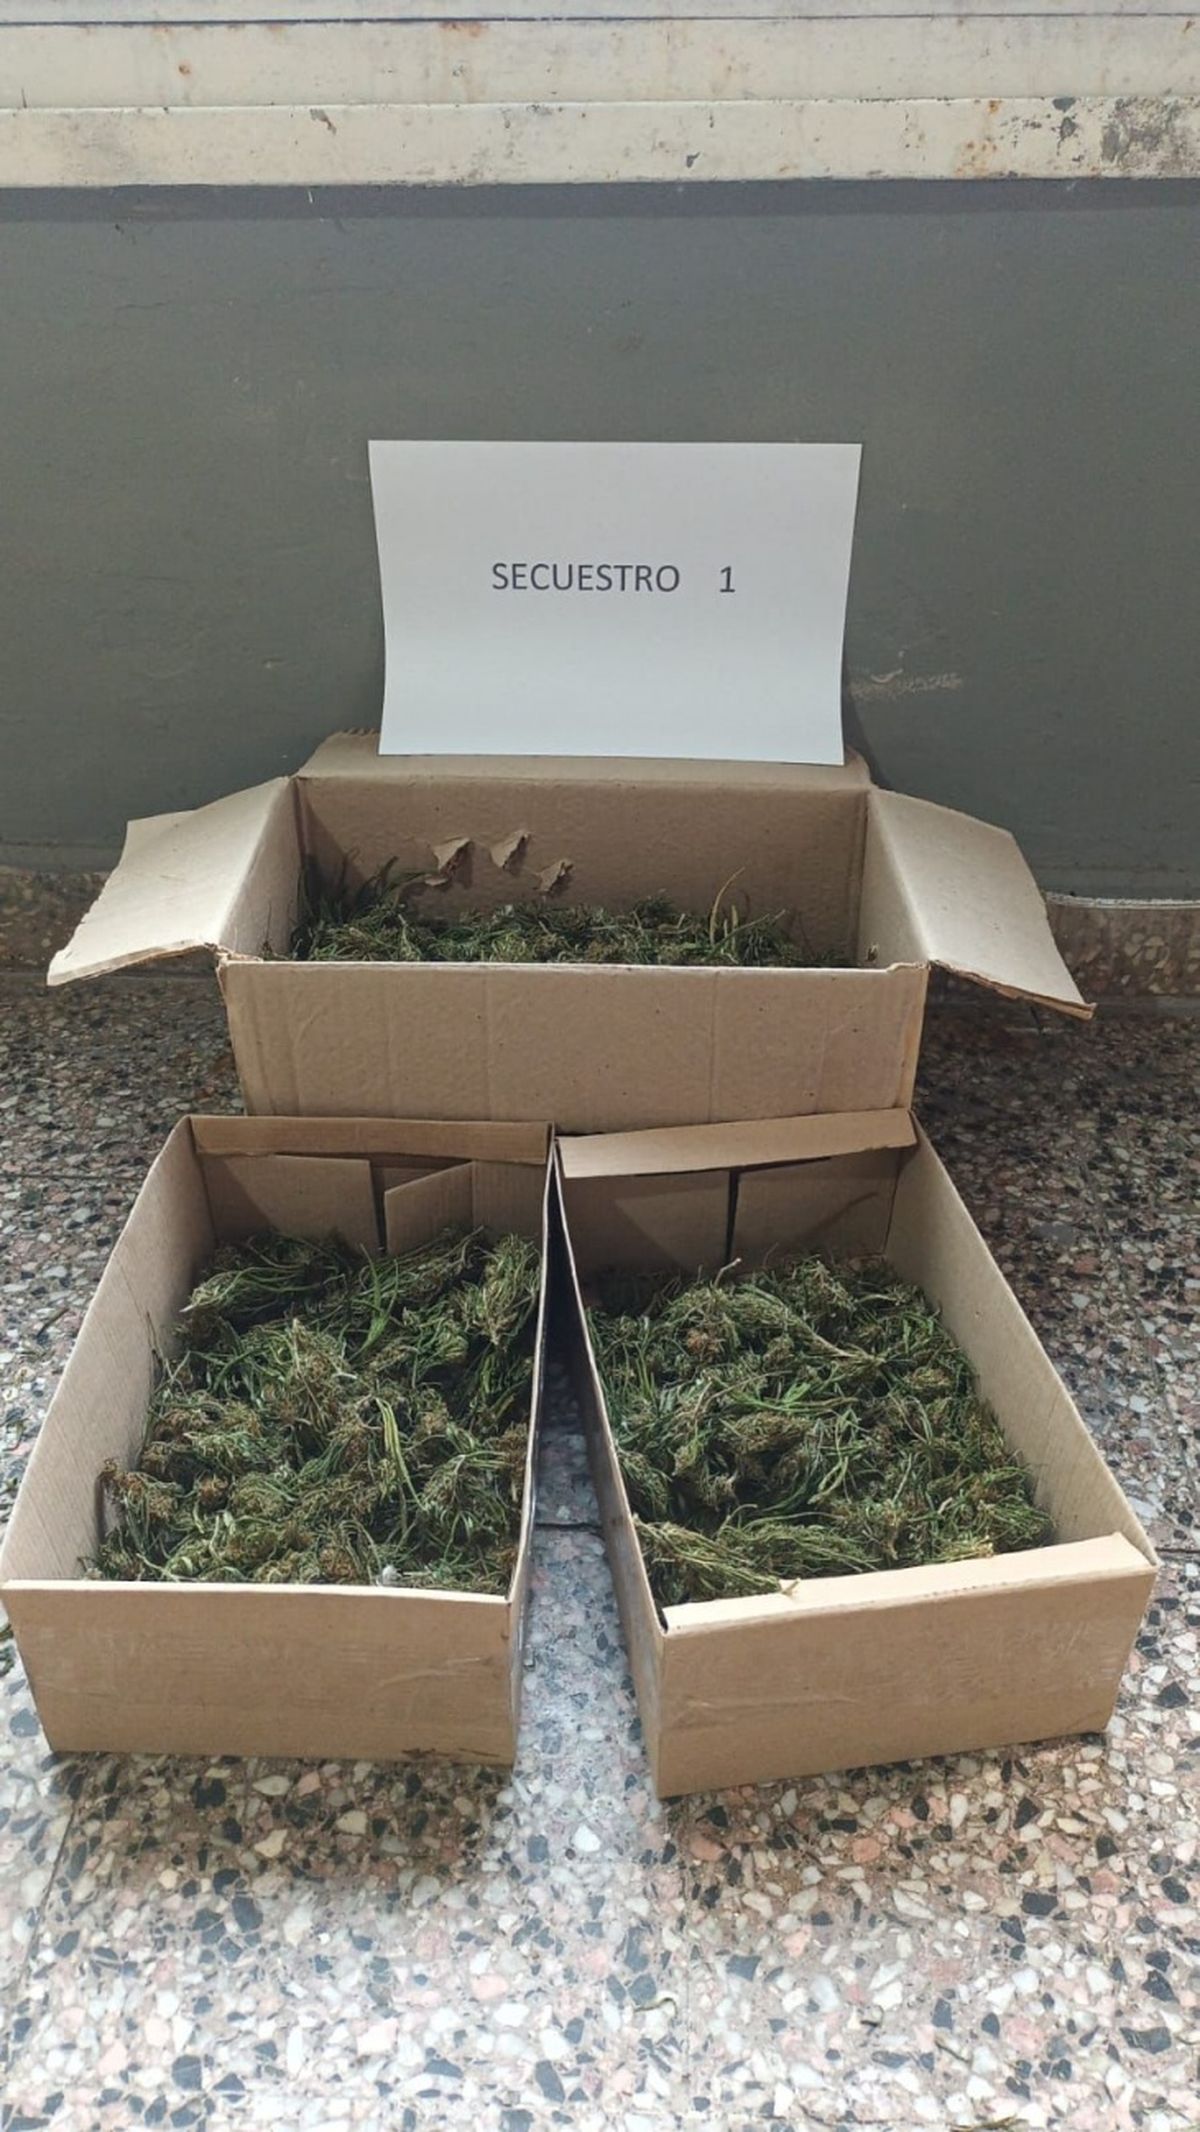 Las plantas de marihuana halladas en la vivienda de Almirante Brown.